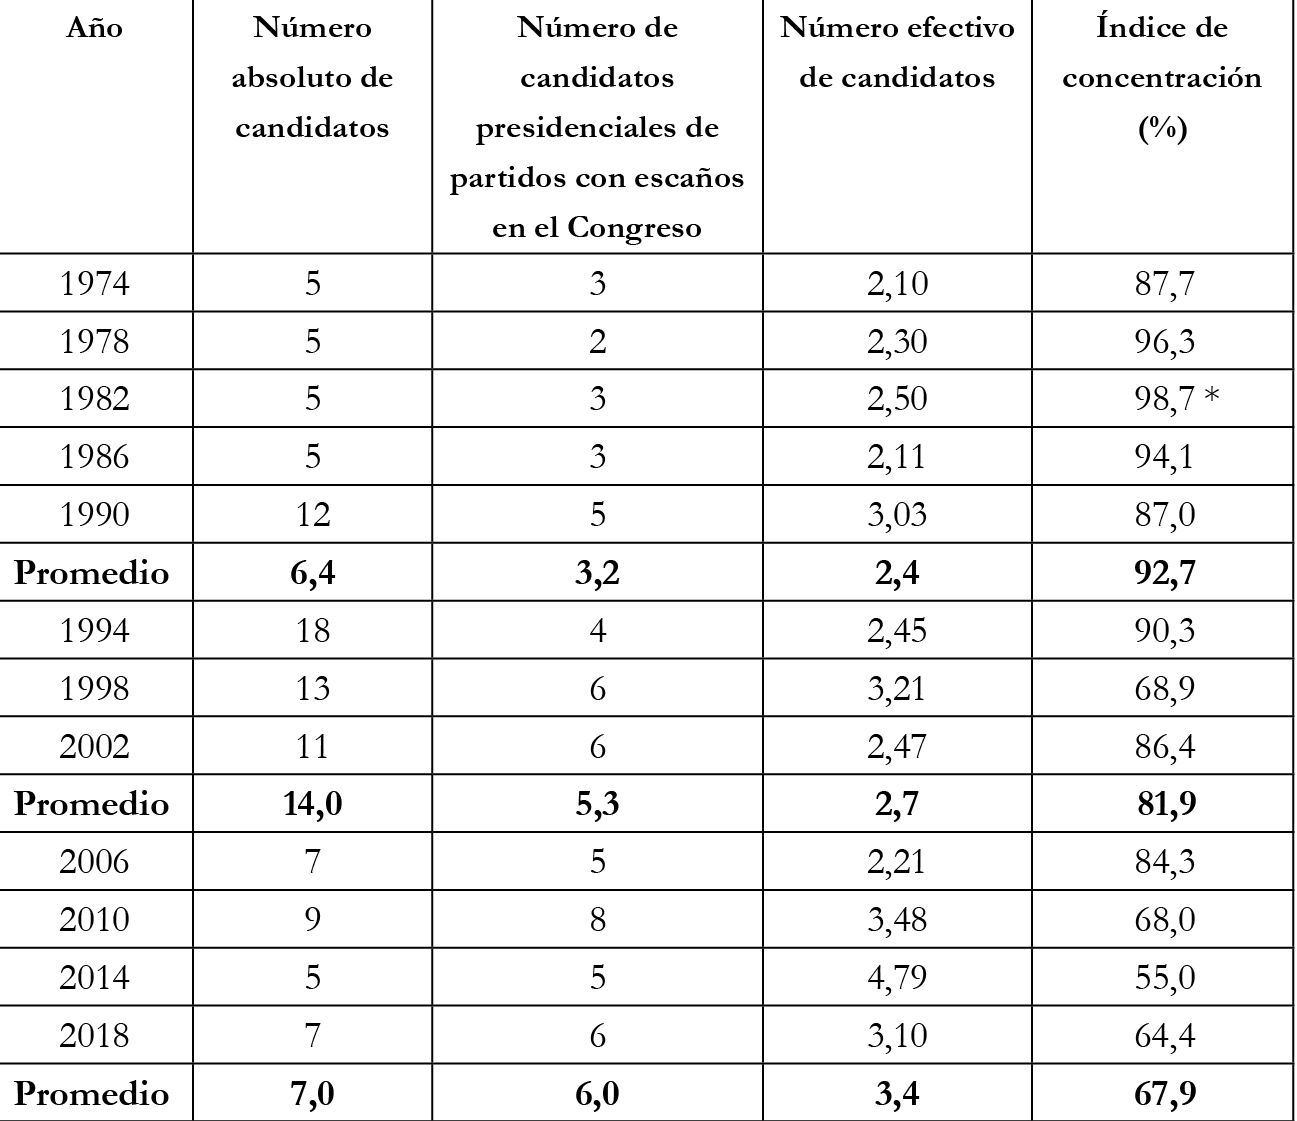 
Indicadores de pluralismo en las elecciones presidenciales 1974-2018
